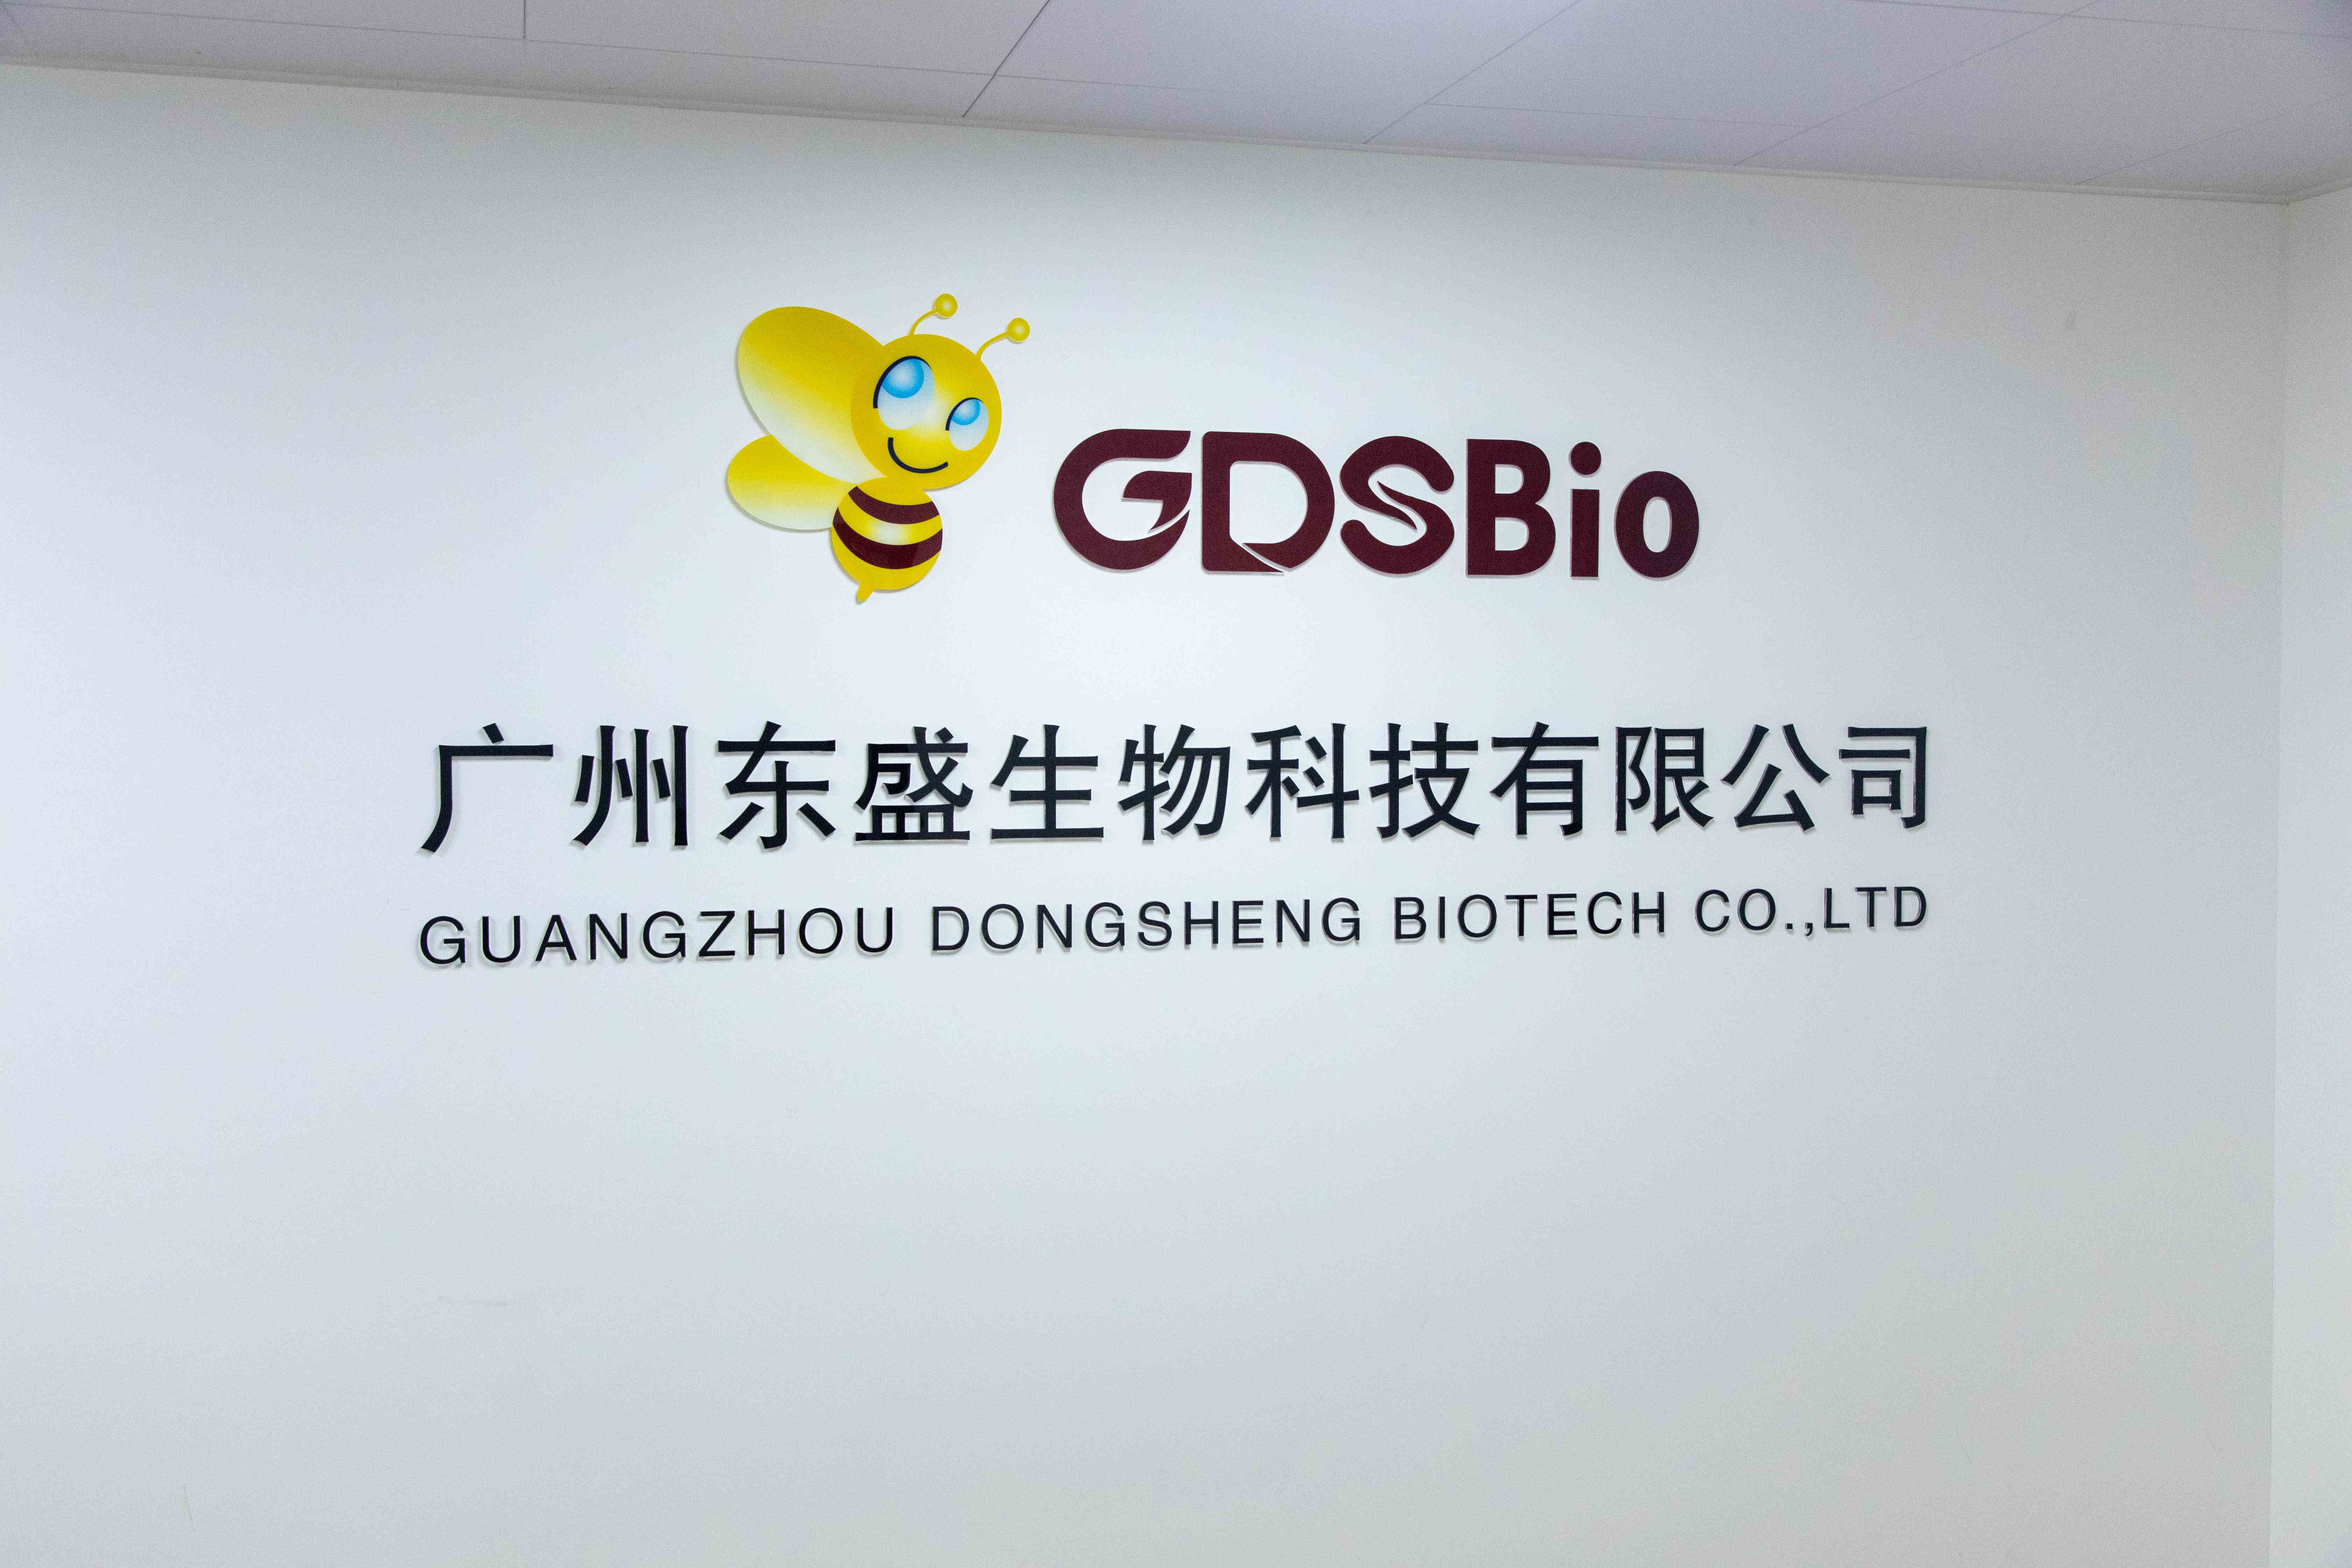 จีน Guangzhou Dongsheng Biotech Co., Ltd รายละเอียด บริษัท